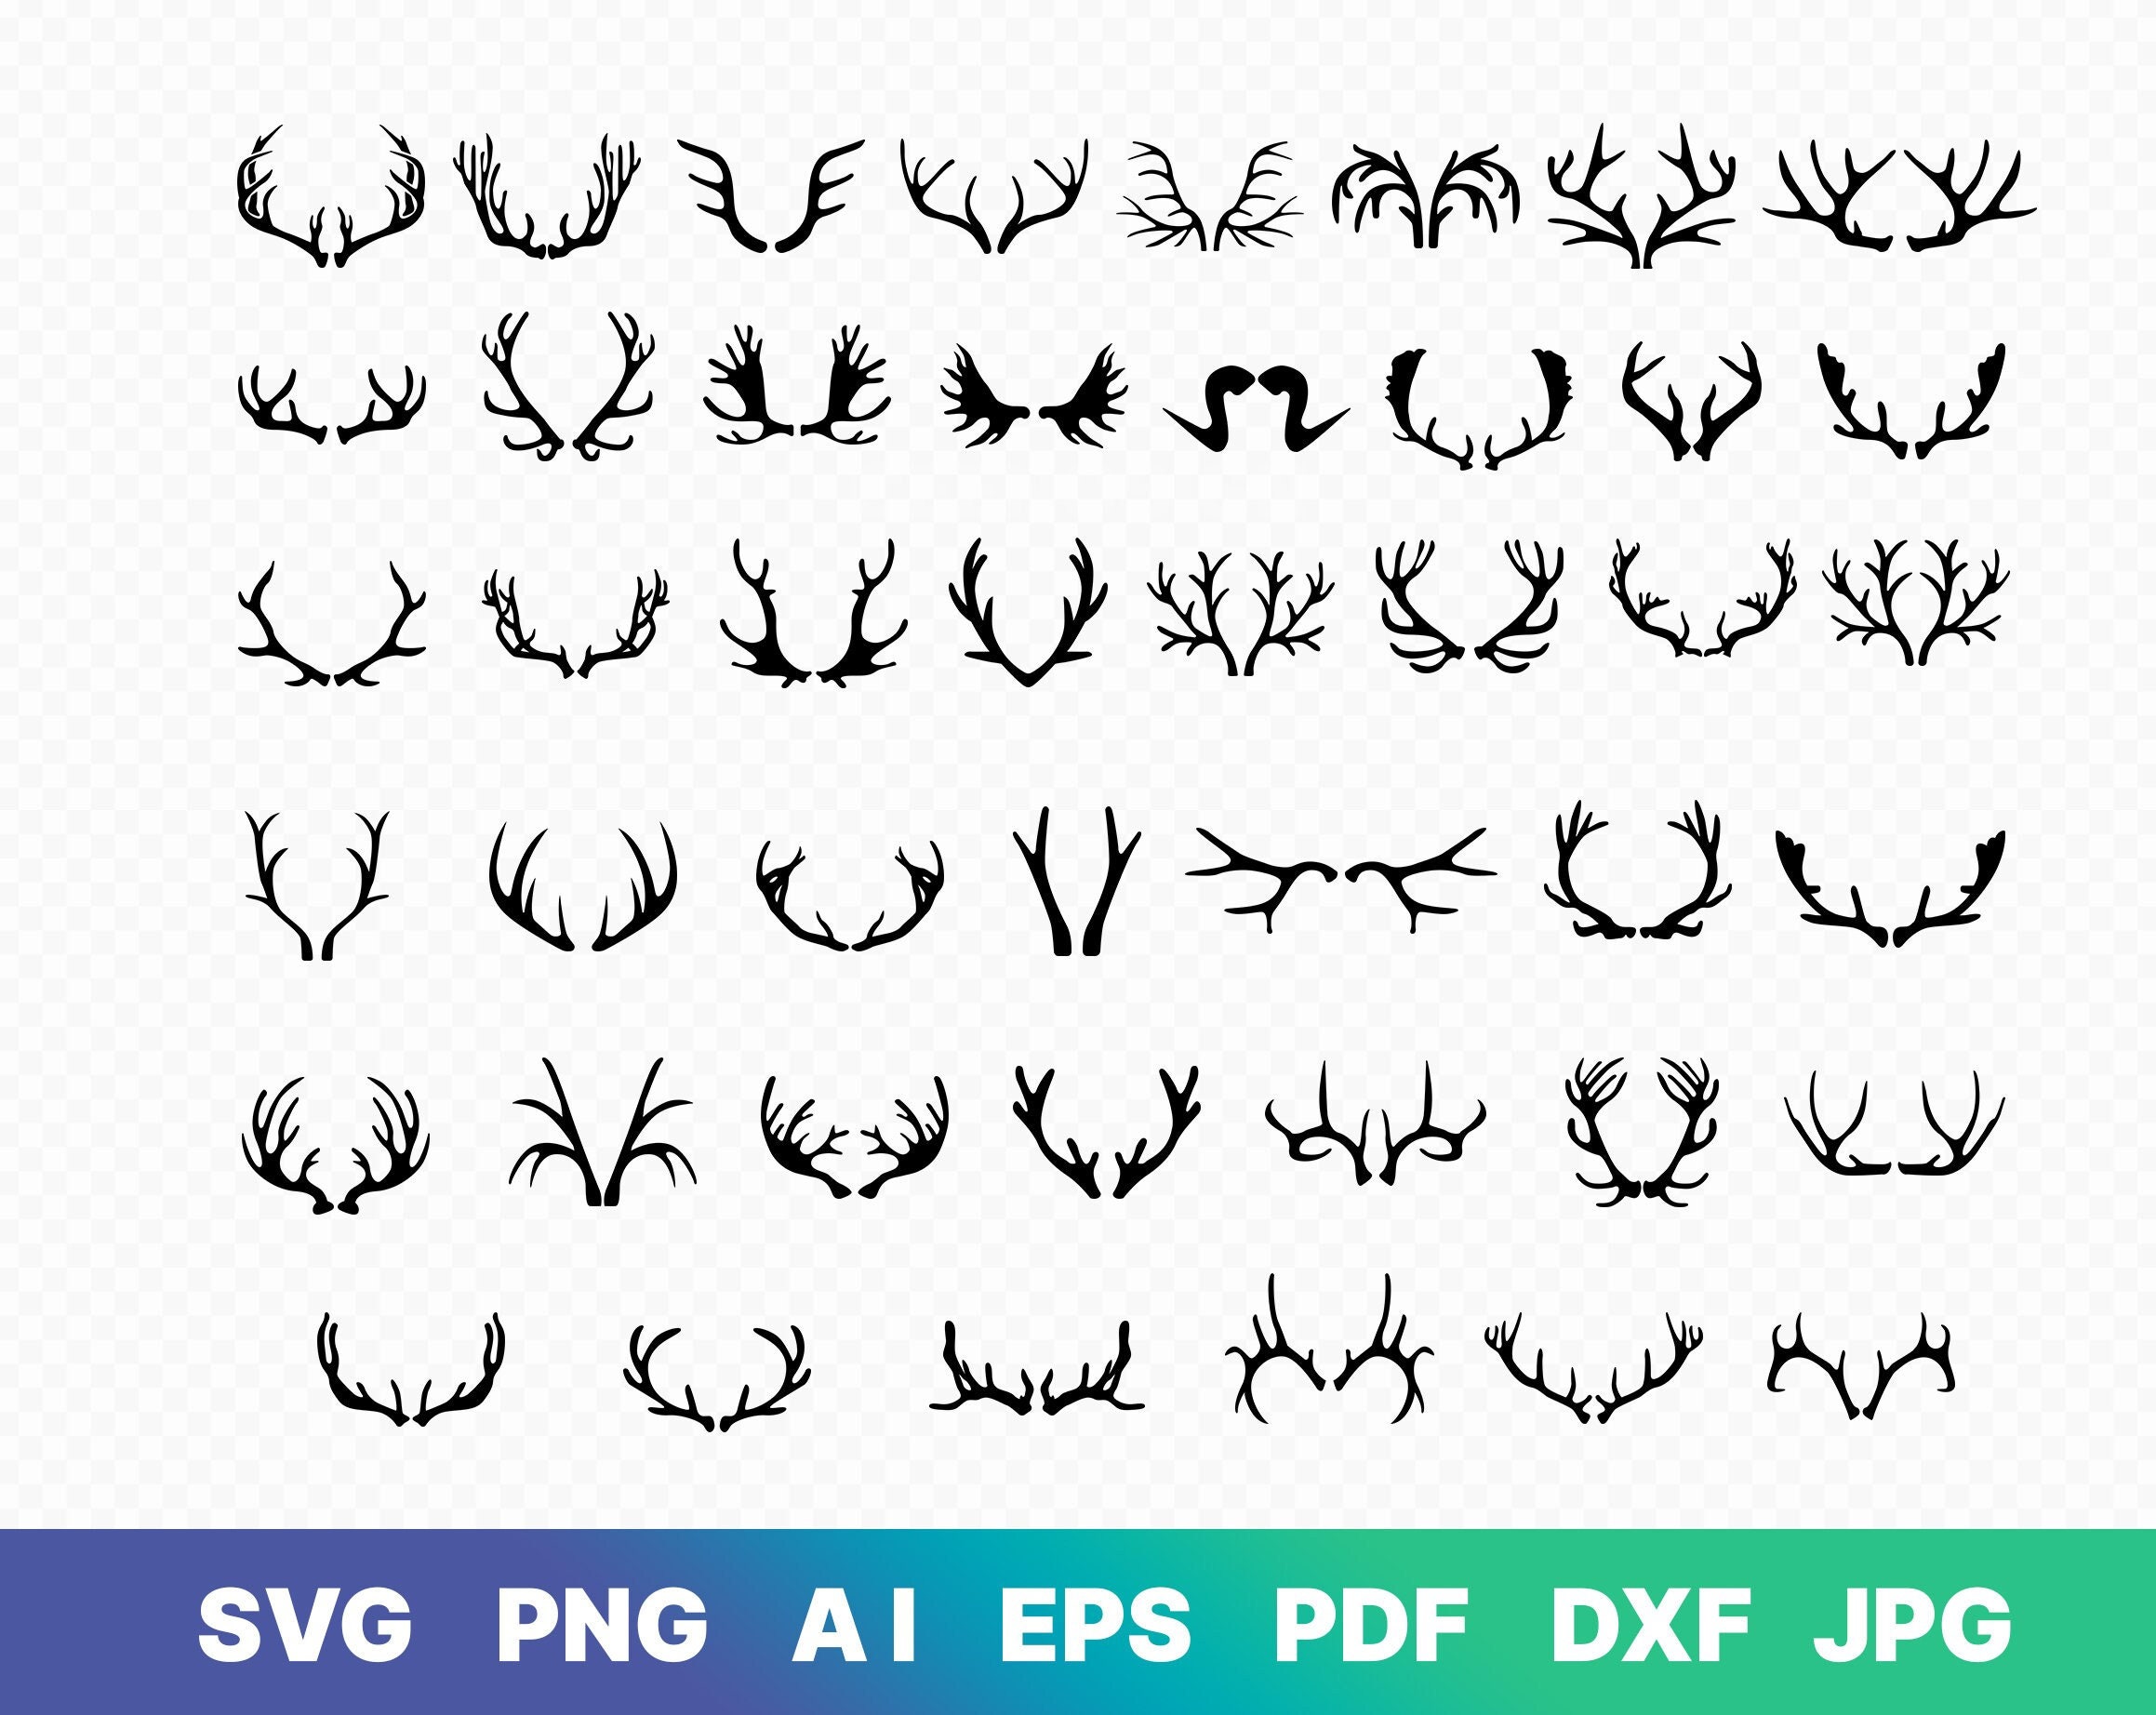 Deer Antlers SVG Deer Antlers Silhouette Clipart Download Deer Antlers Cut  File Deer Antlers Svg Jpg Eps Pdf Png Dxf SC1222 